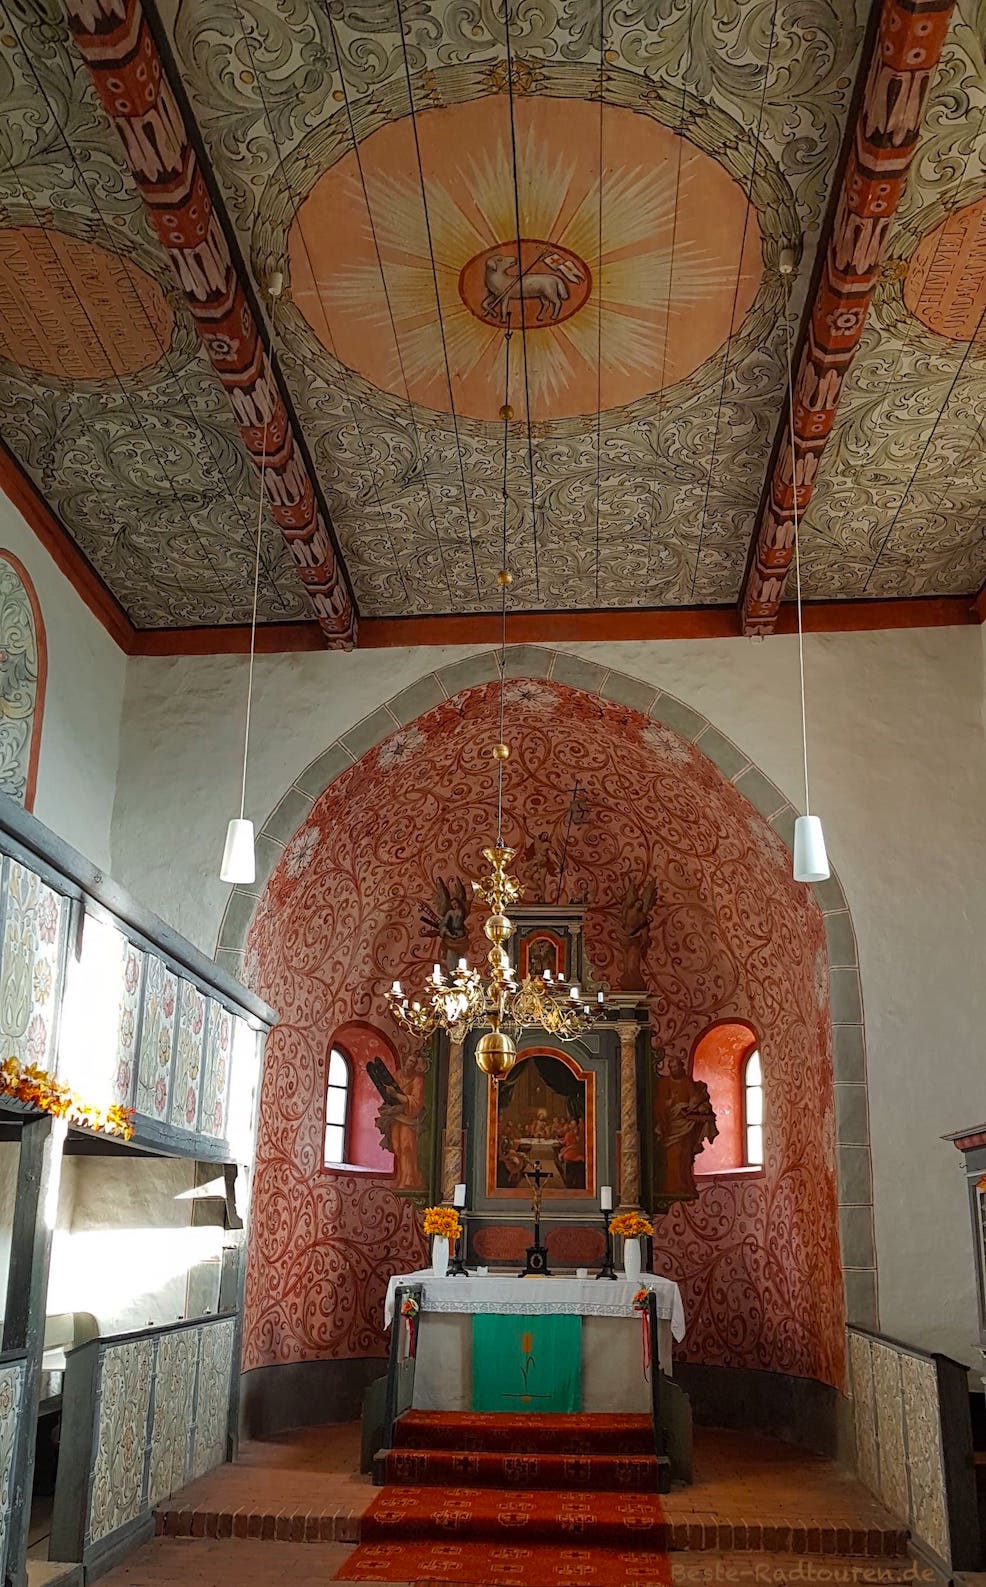 Dorfkirche Raben, Foto innen: Altar, Wandmalereien, Deckenmalereien, Gestaltung der Emporen